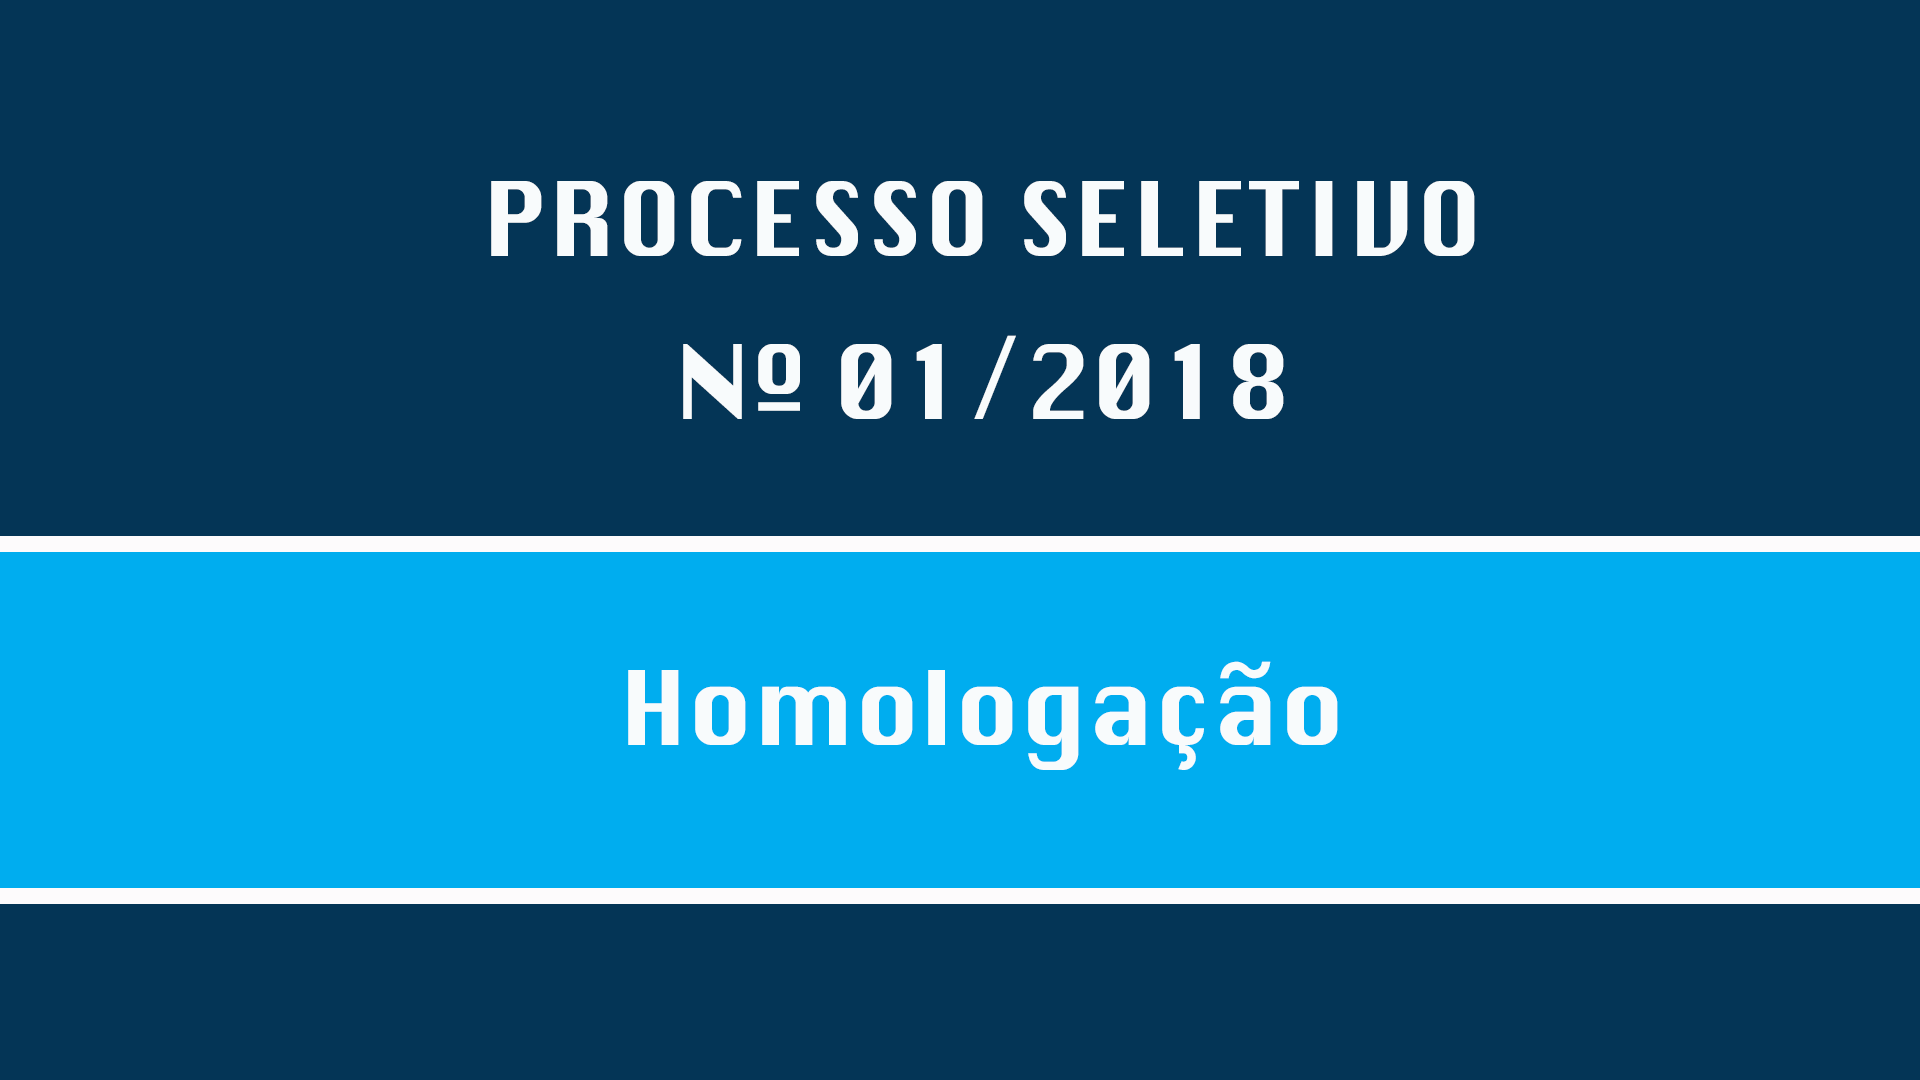 PROCESSO SELETIVO Nº 001/2018 - HOMOLOGAÇÃO